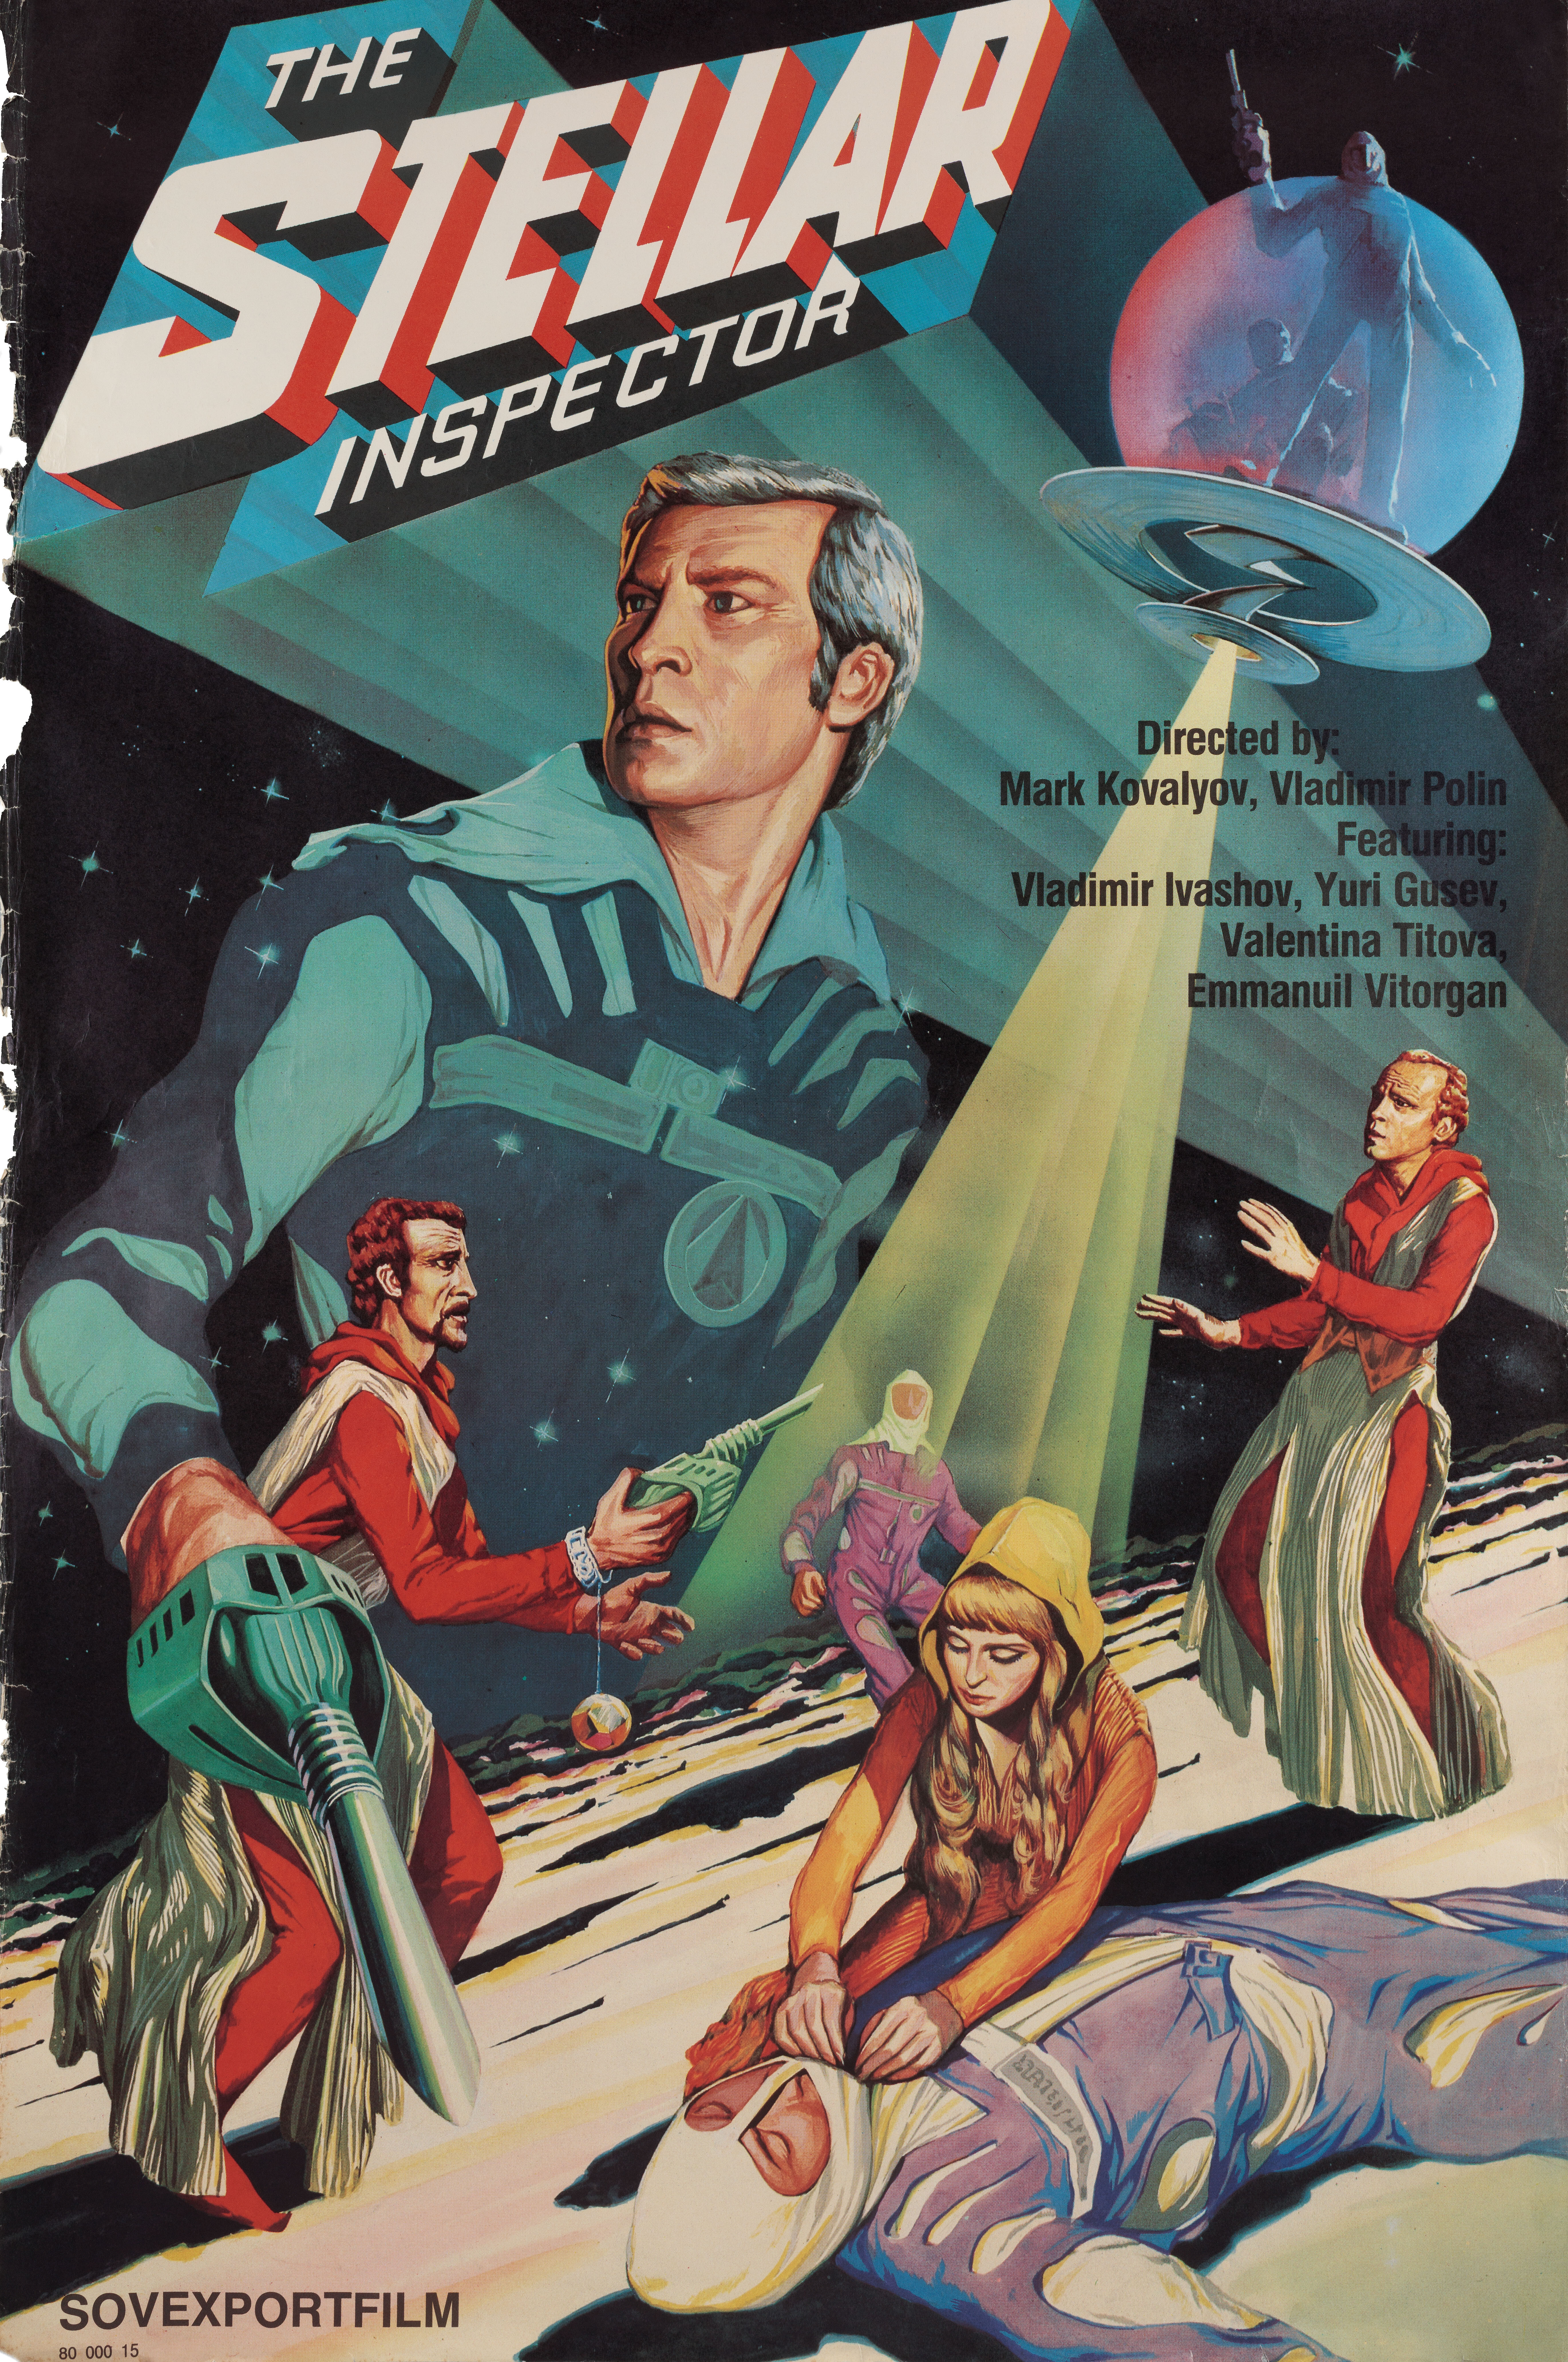 Звездный инспектор (режиссёр Марк Ковалёв, 1980), советский постер к фильму, 1990 год